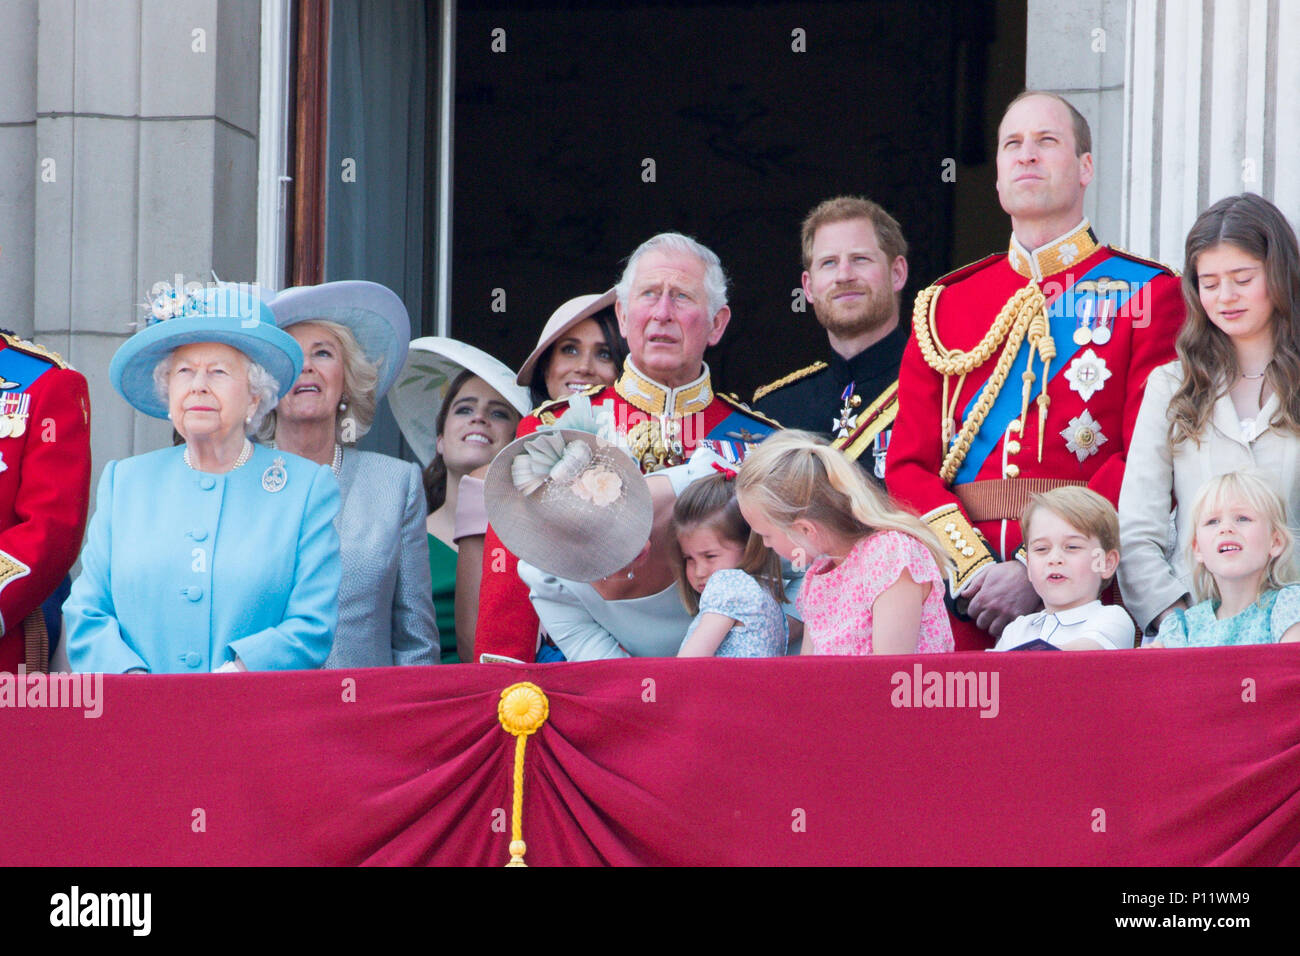 La famille royale à la parade la couleur à Londres aujourd'hui. Le duc et la duchesse de Sussex ont rejoint la reine pour la parade du défilé de couleurs pour marquer son 92e anniversaire. Imprimer Harry et Meghan Markle, qui a épousé le mois dernier, est arrivé dans le cadre de la procession du chariot. Une grande foule de spectateurs se sont rassemblés pour regarder la cérémonie de samedi, qui a vu autour de 1 000 soldats de mars à Horse Guards Parade dans Whitehall. Banque D'Images